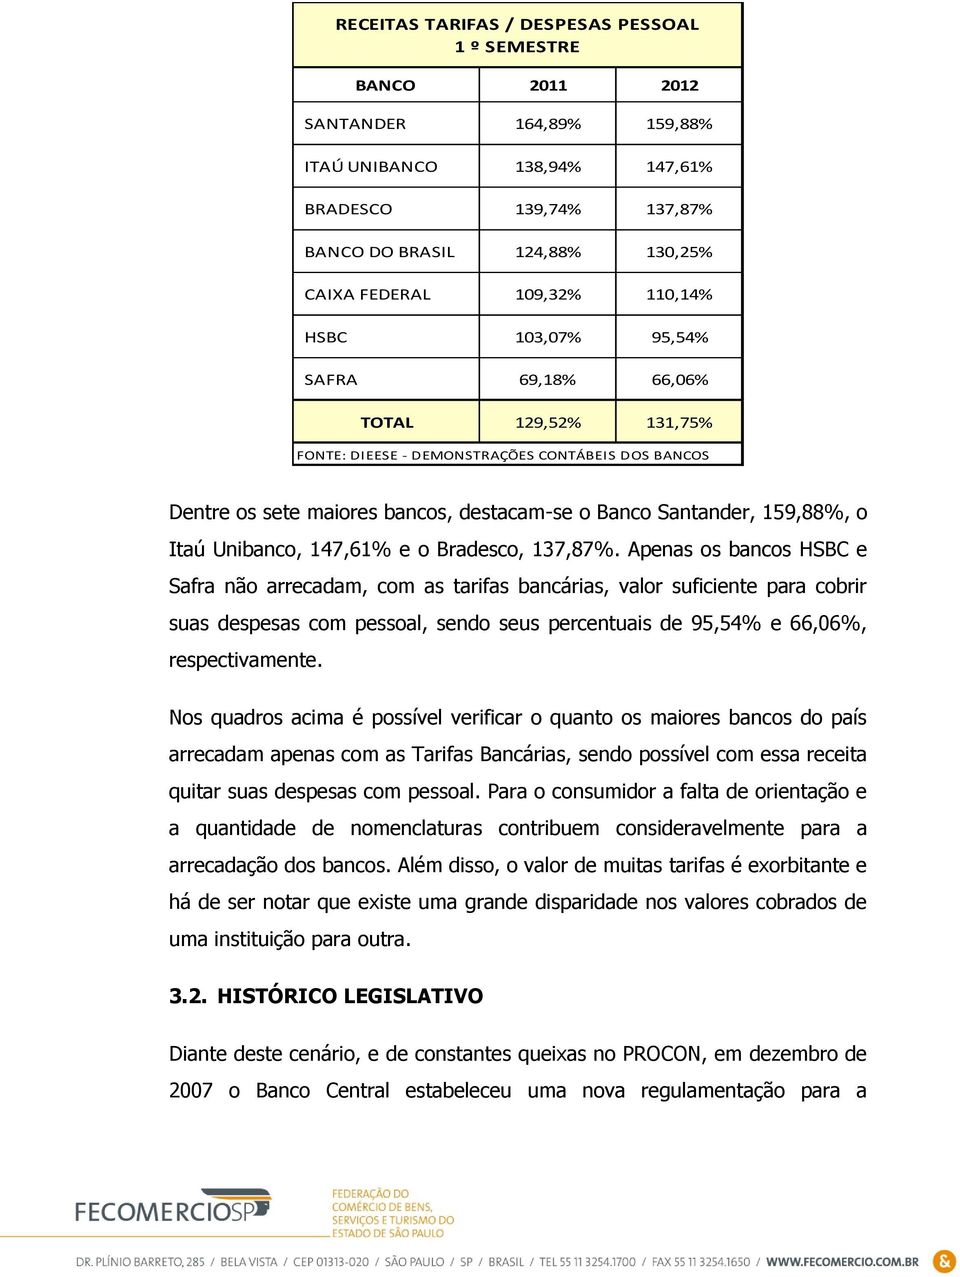 Unibanco, 147,61% e o Bradesco, 137,87%.